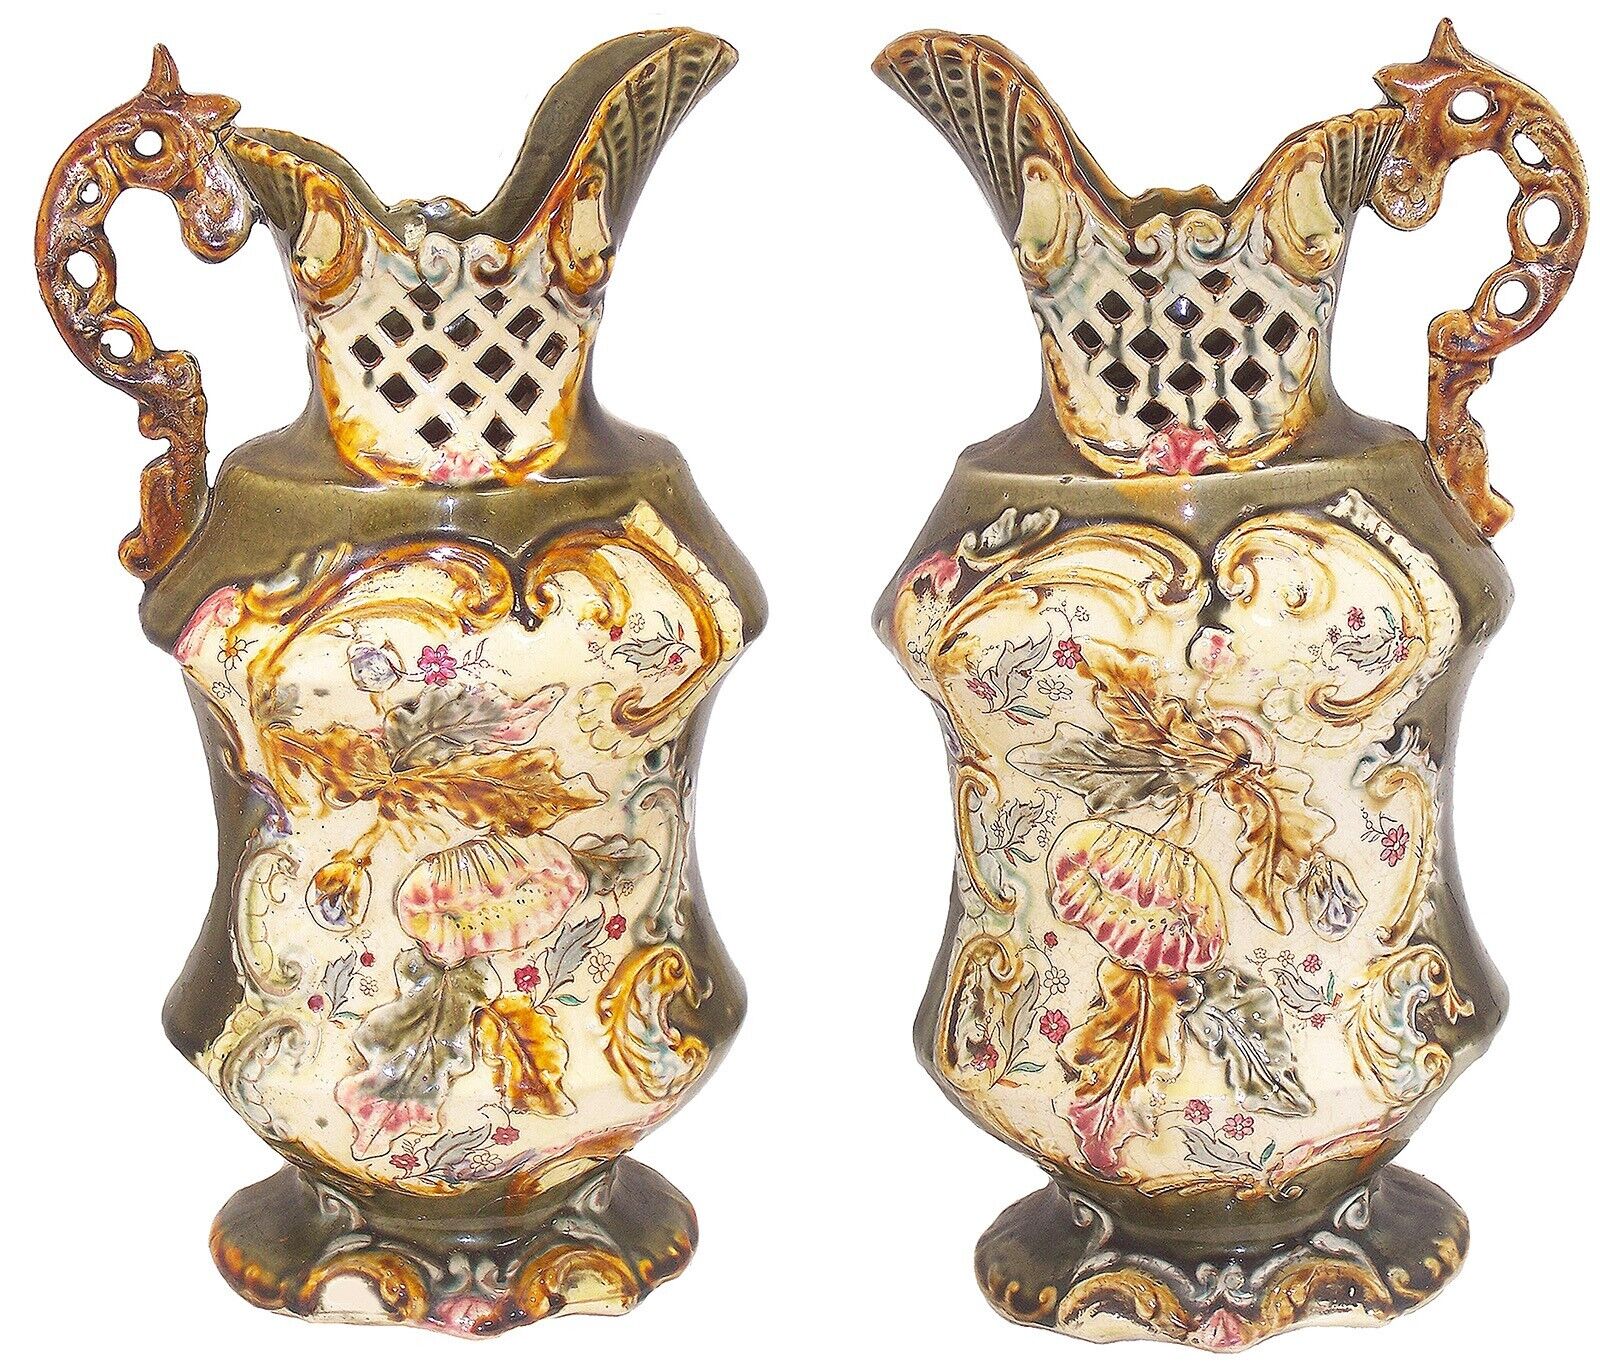 Pair of Antique Art Nouveau Bohemian Majolica Pitcher Vases, 13” High